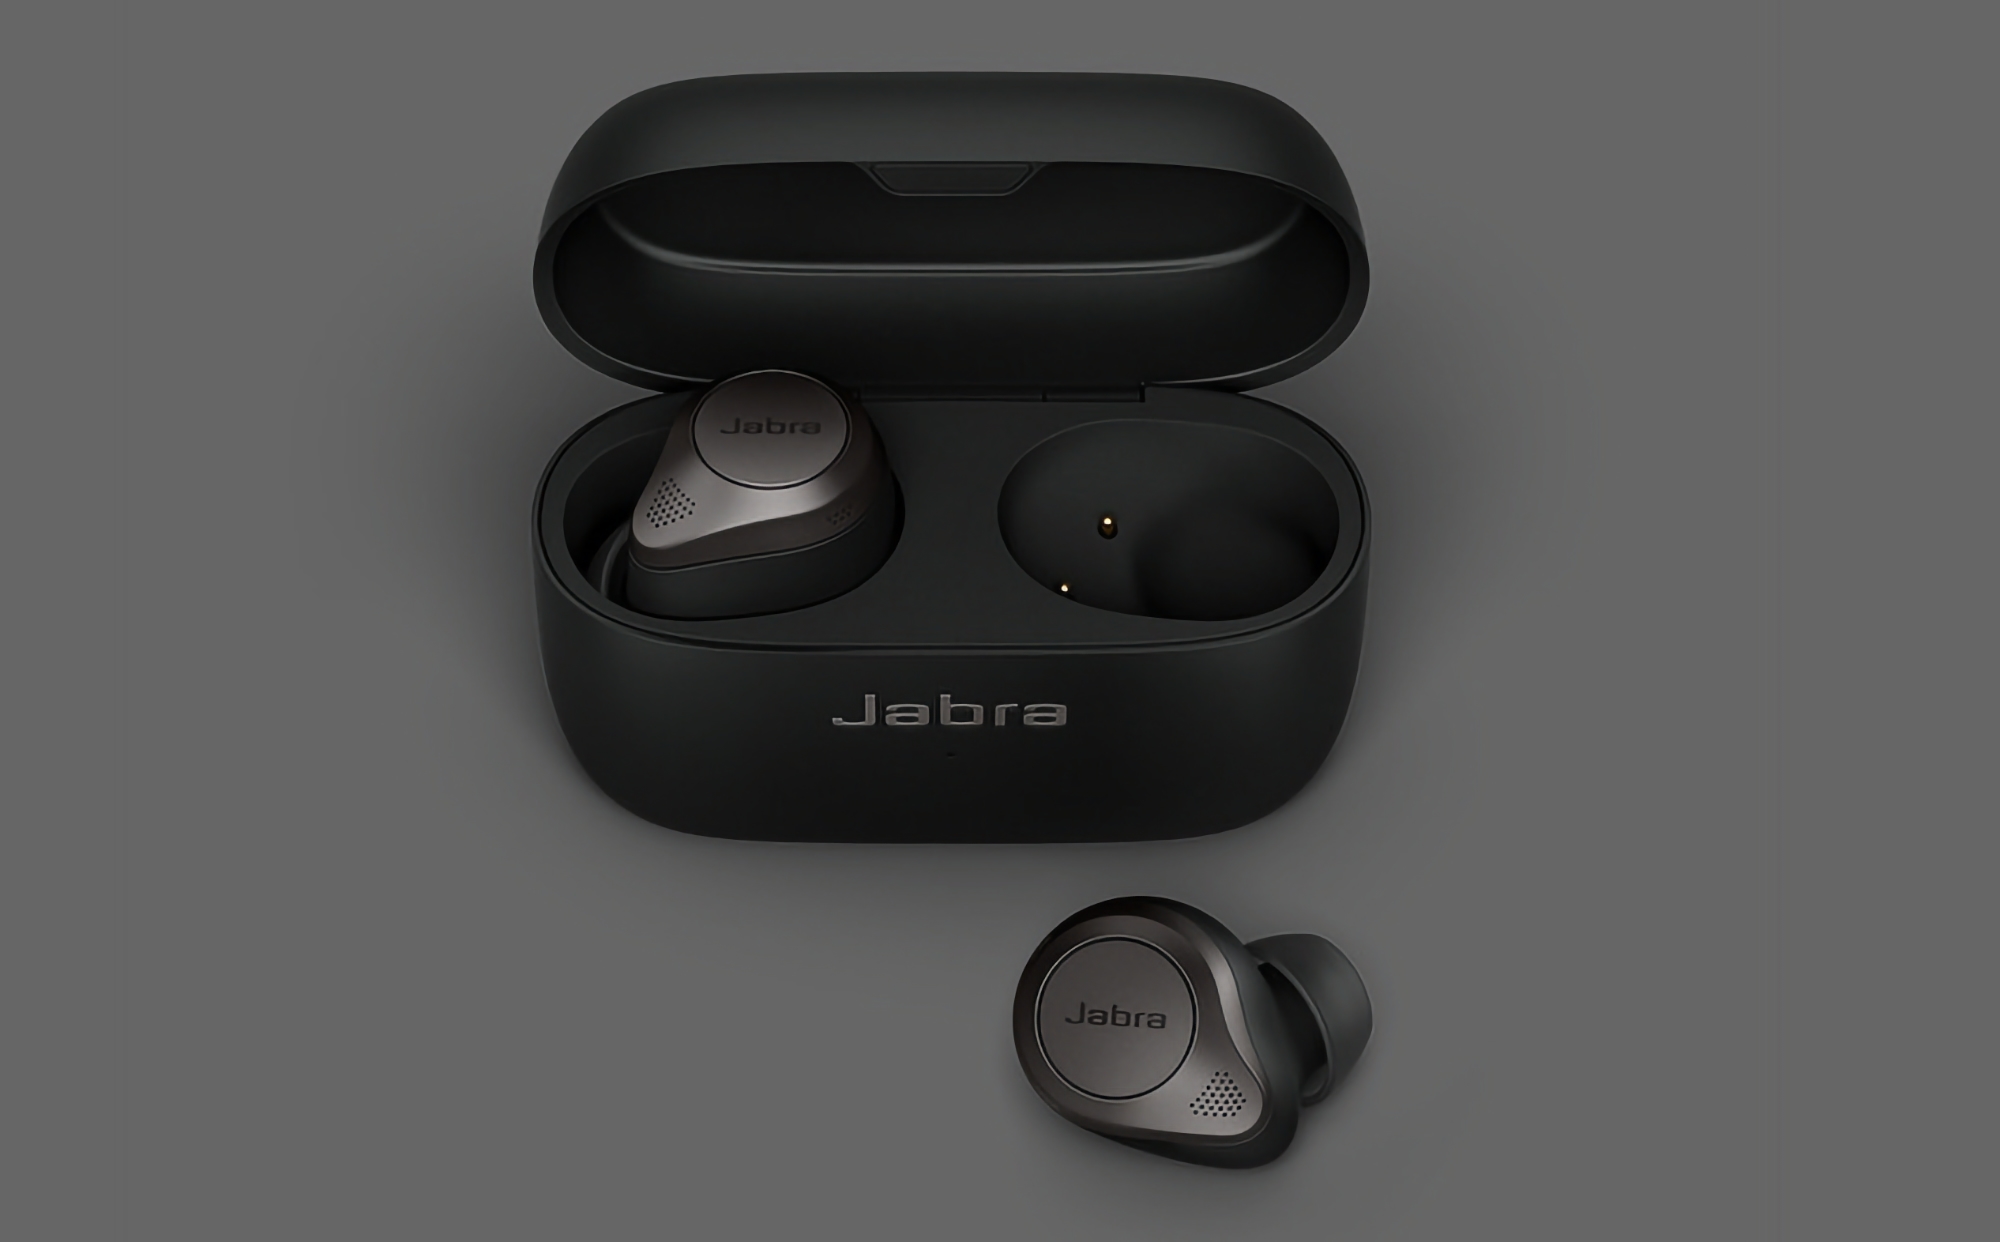 Jabra Elite 7 Pro op Amazon: TWS-hoofdtelefoon met IP57-bescherming, ANC en een batterijlevensduur tot 35 uur voor 45 euro korting